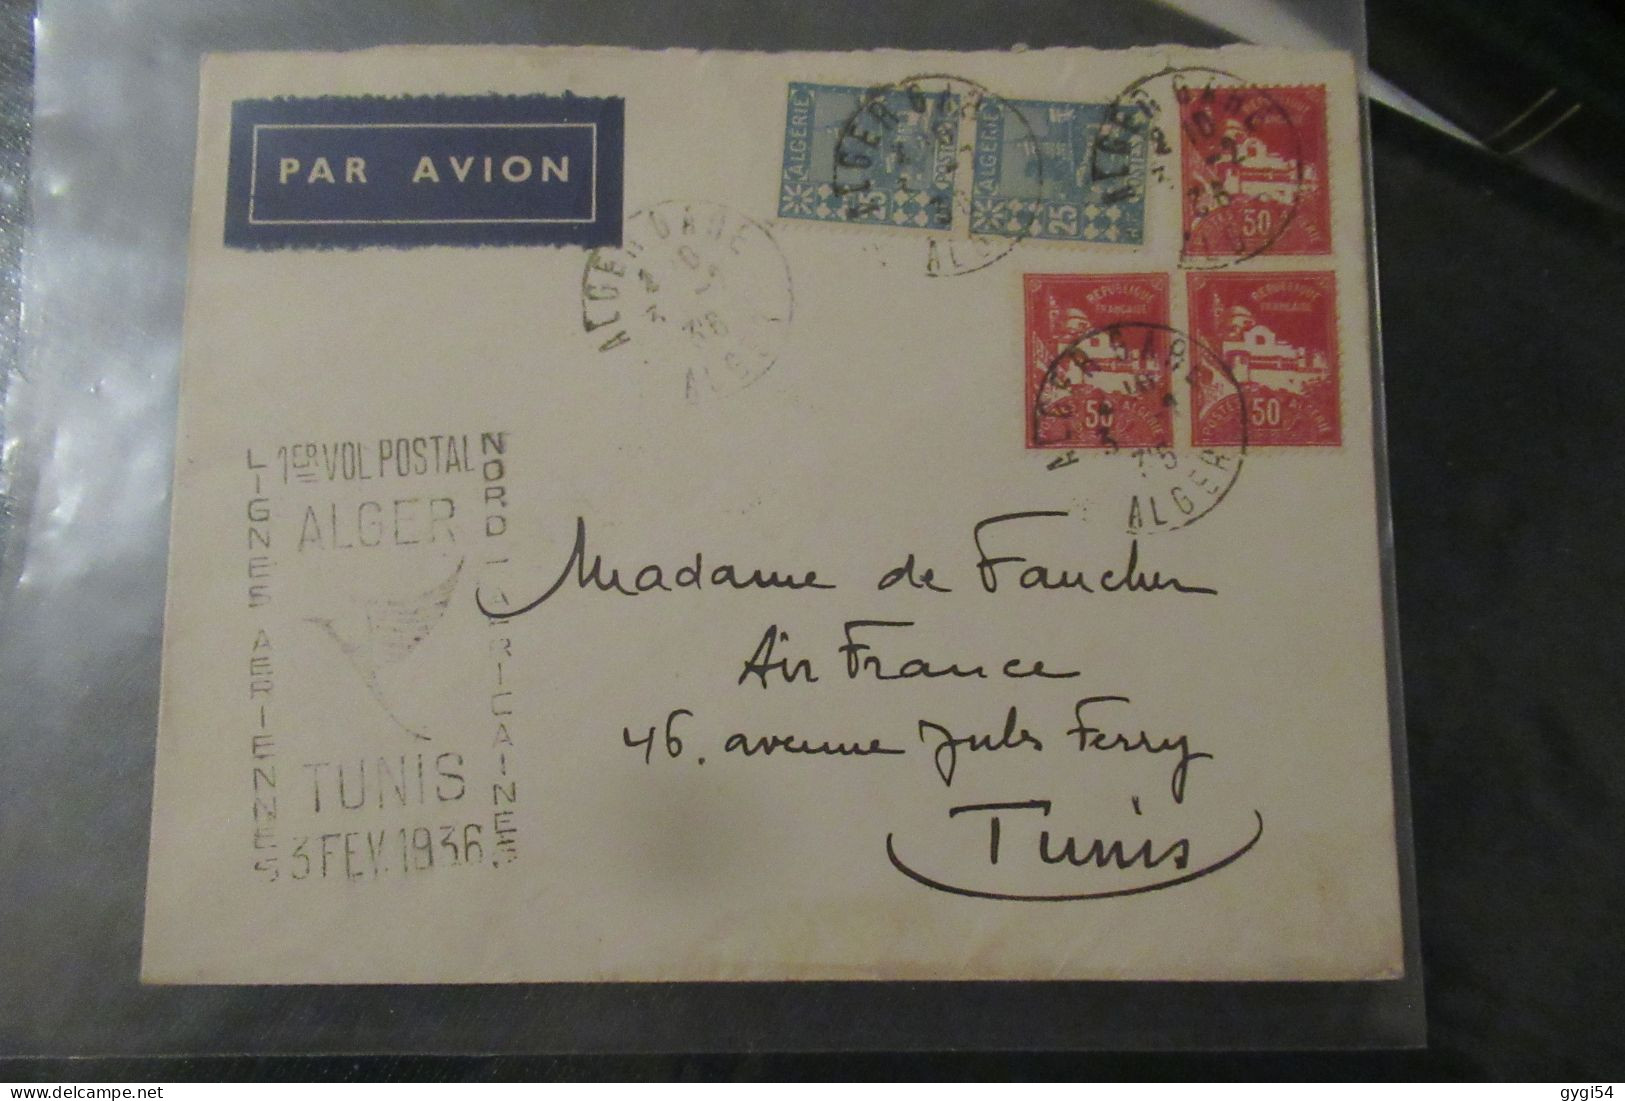 Algérie - 1er Vol Postal ALGER TUNIS 3 Février 1936 - Poste Aérienne